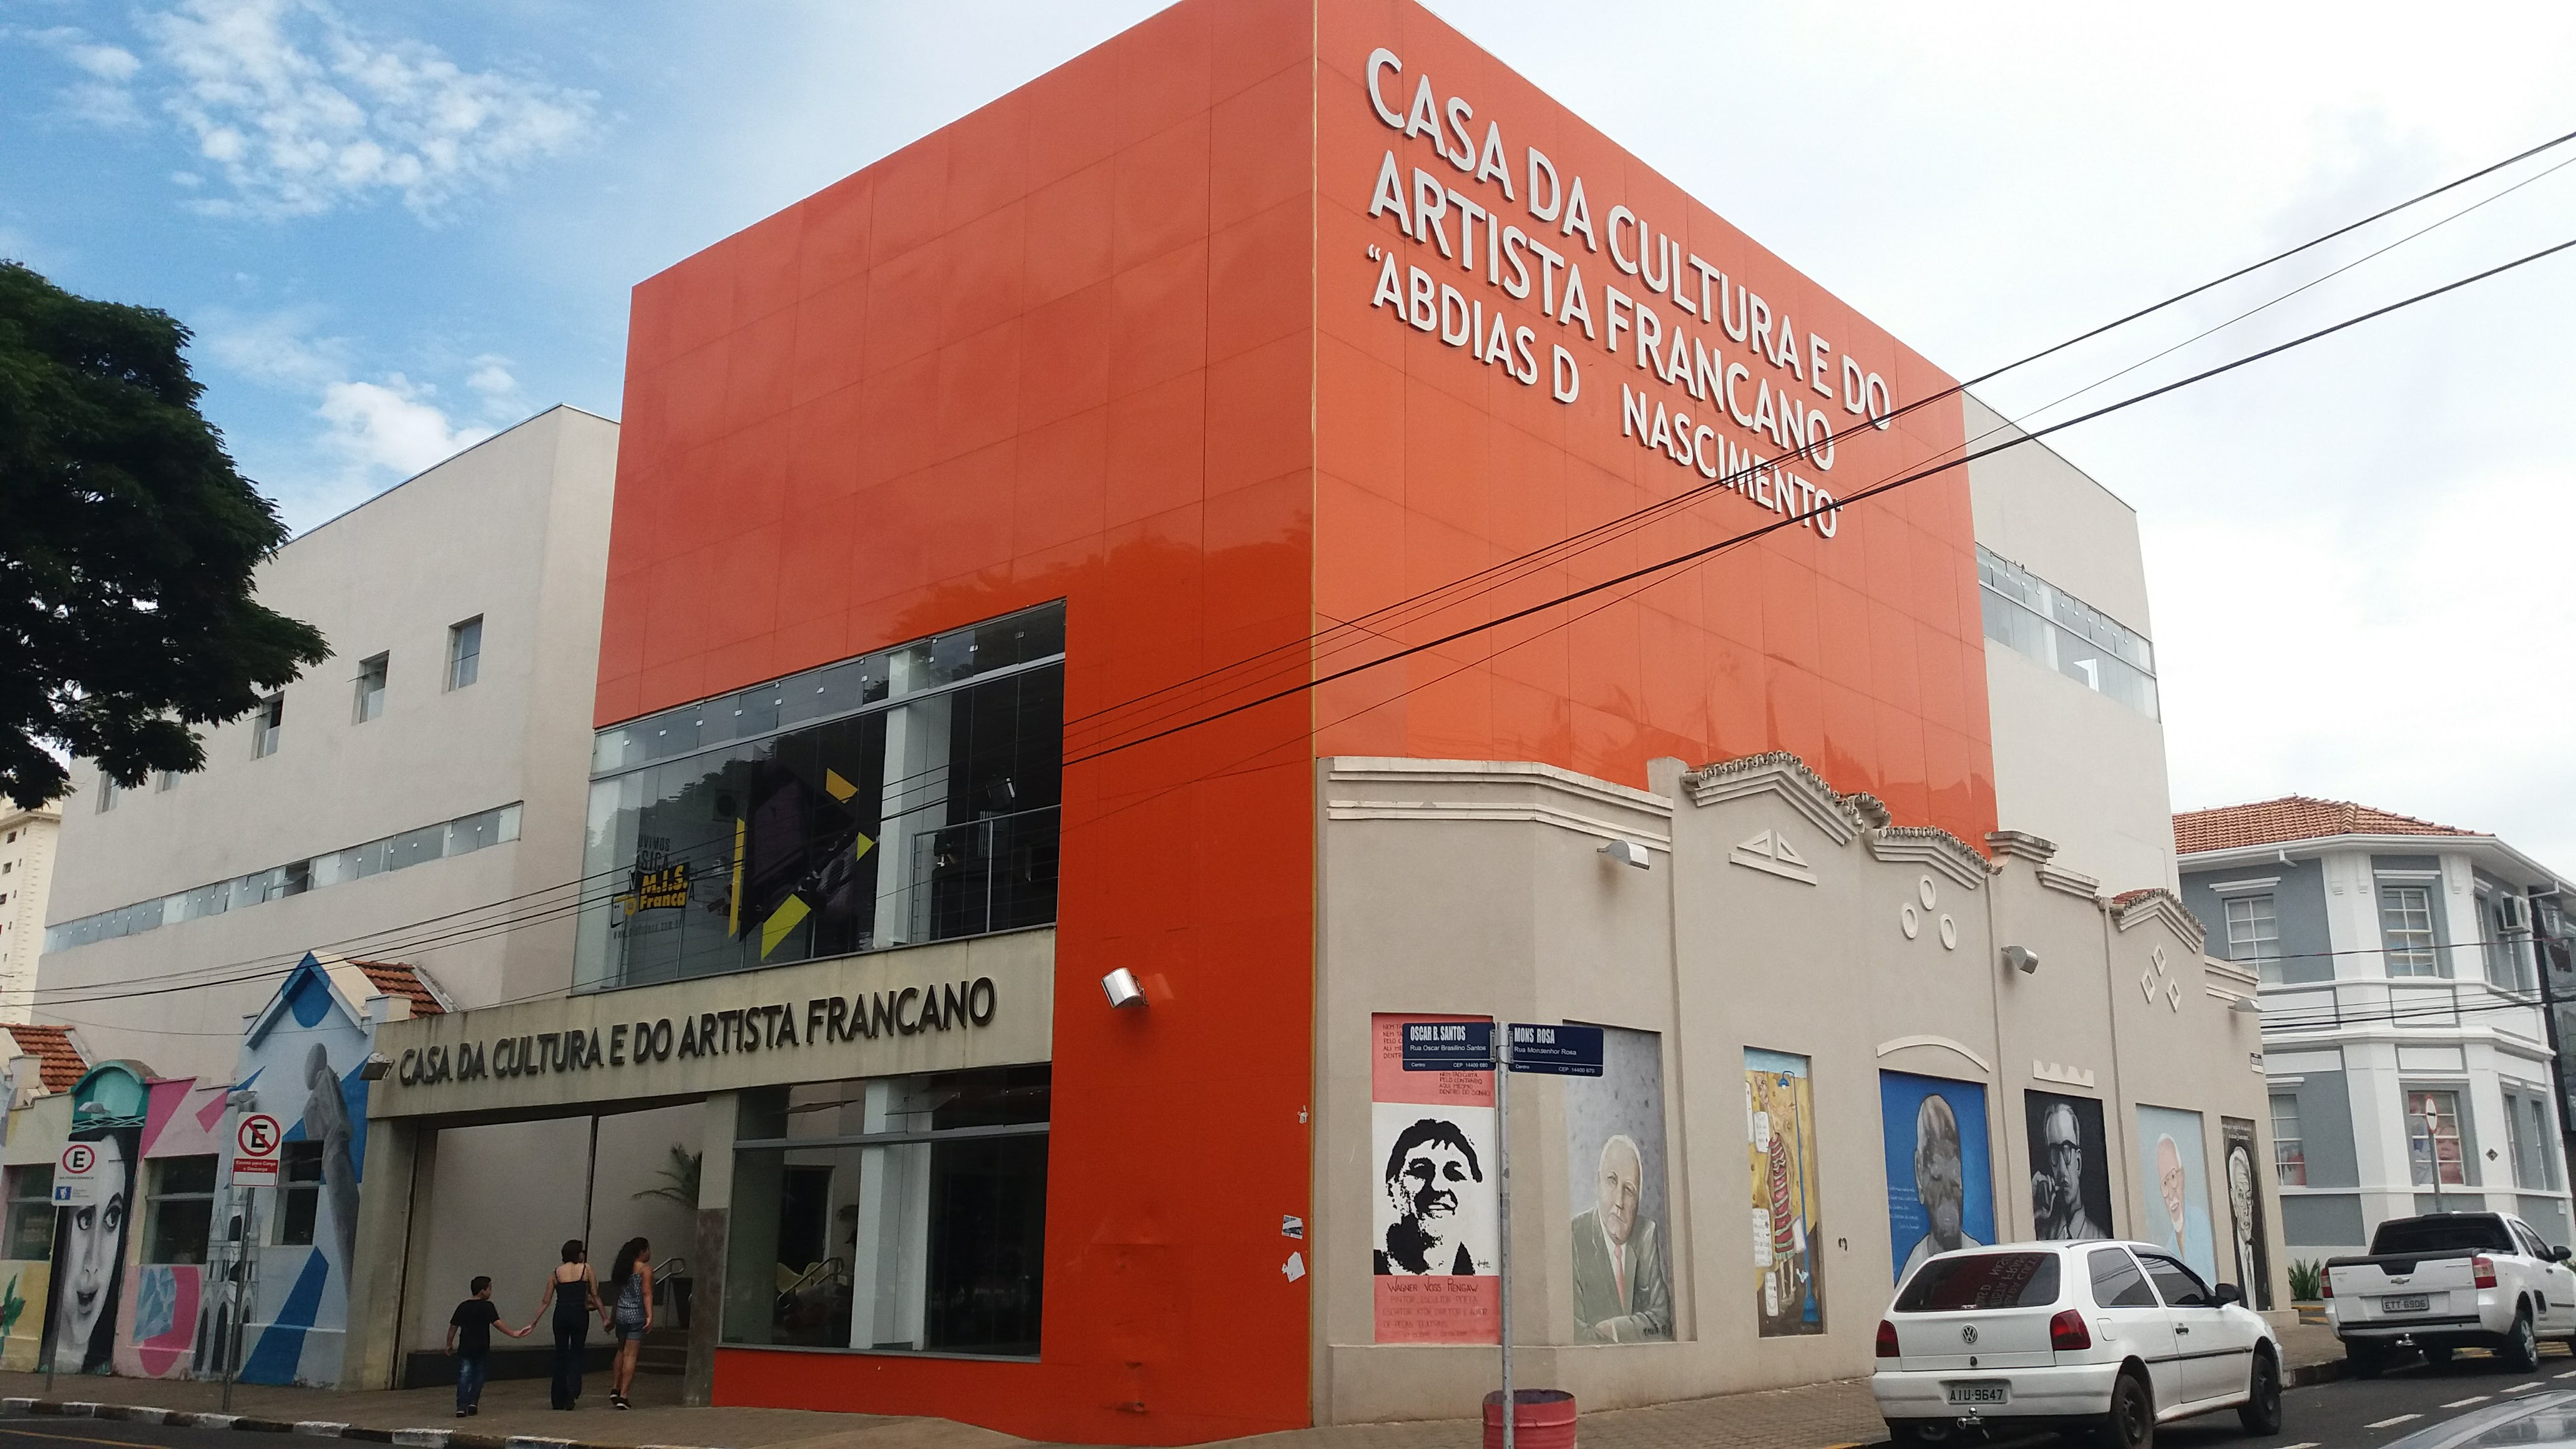 Casa da Cultura e do Artista Francano Abdias Nascimento Franca SP Brazil original